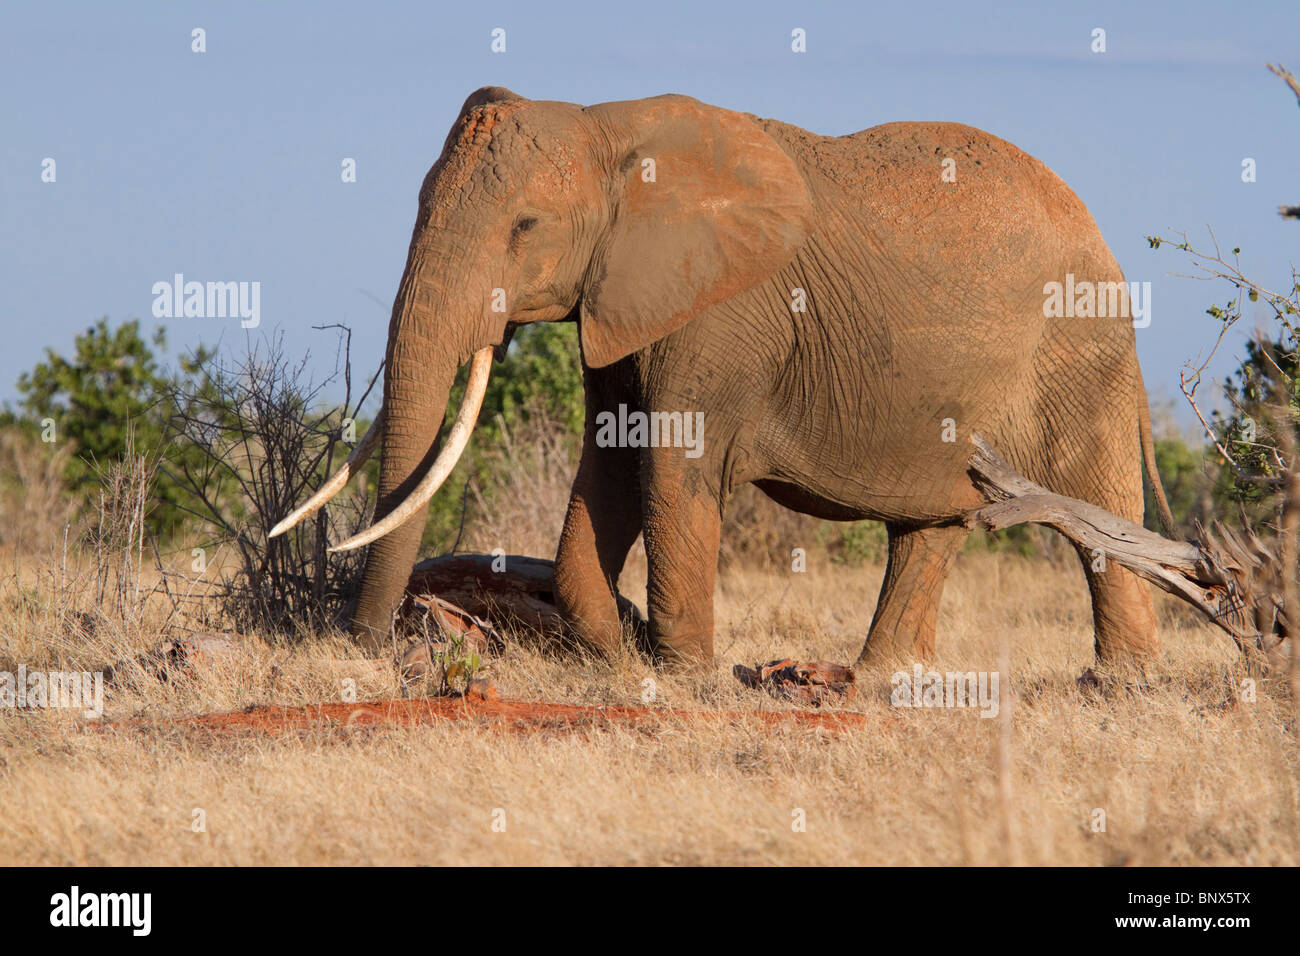 Elefante africano (Loxodonta africana) bajo la luz de la tarde. Foto de stock